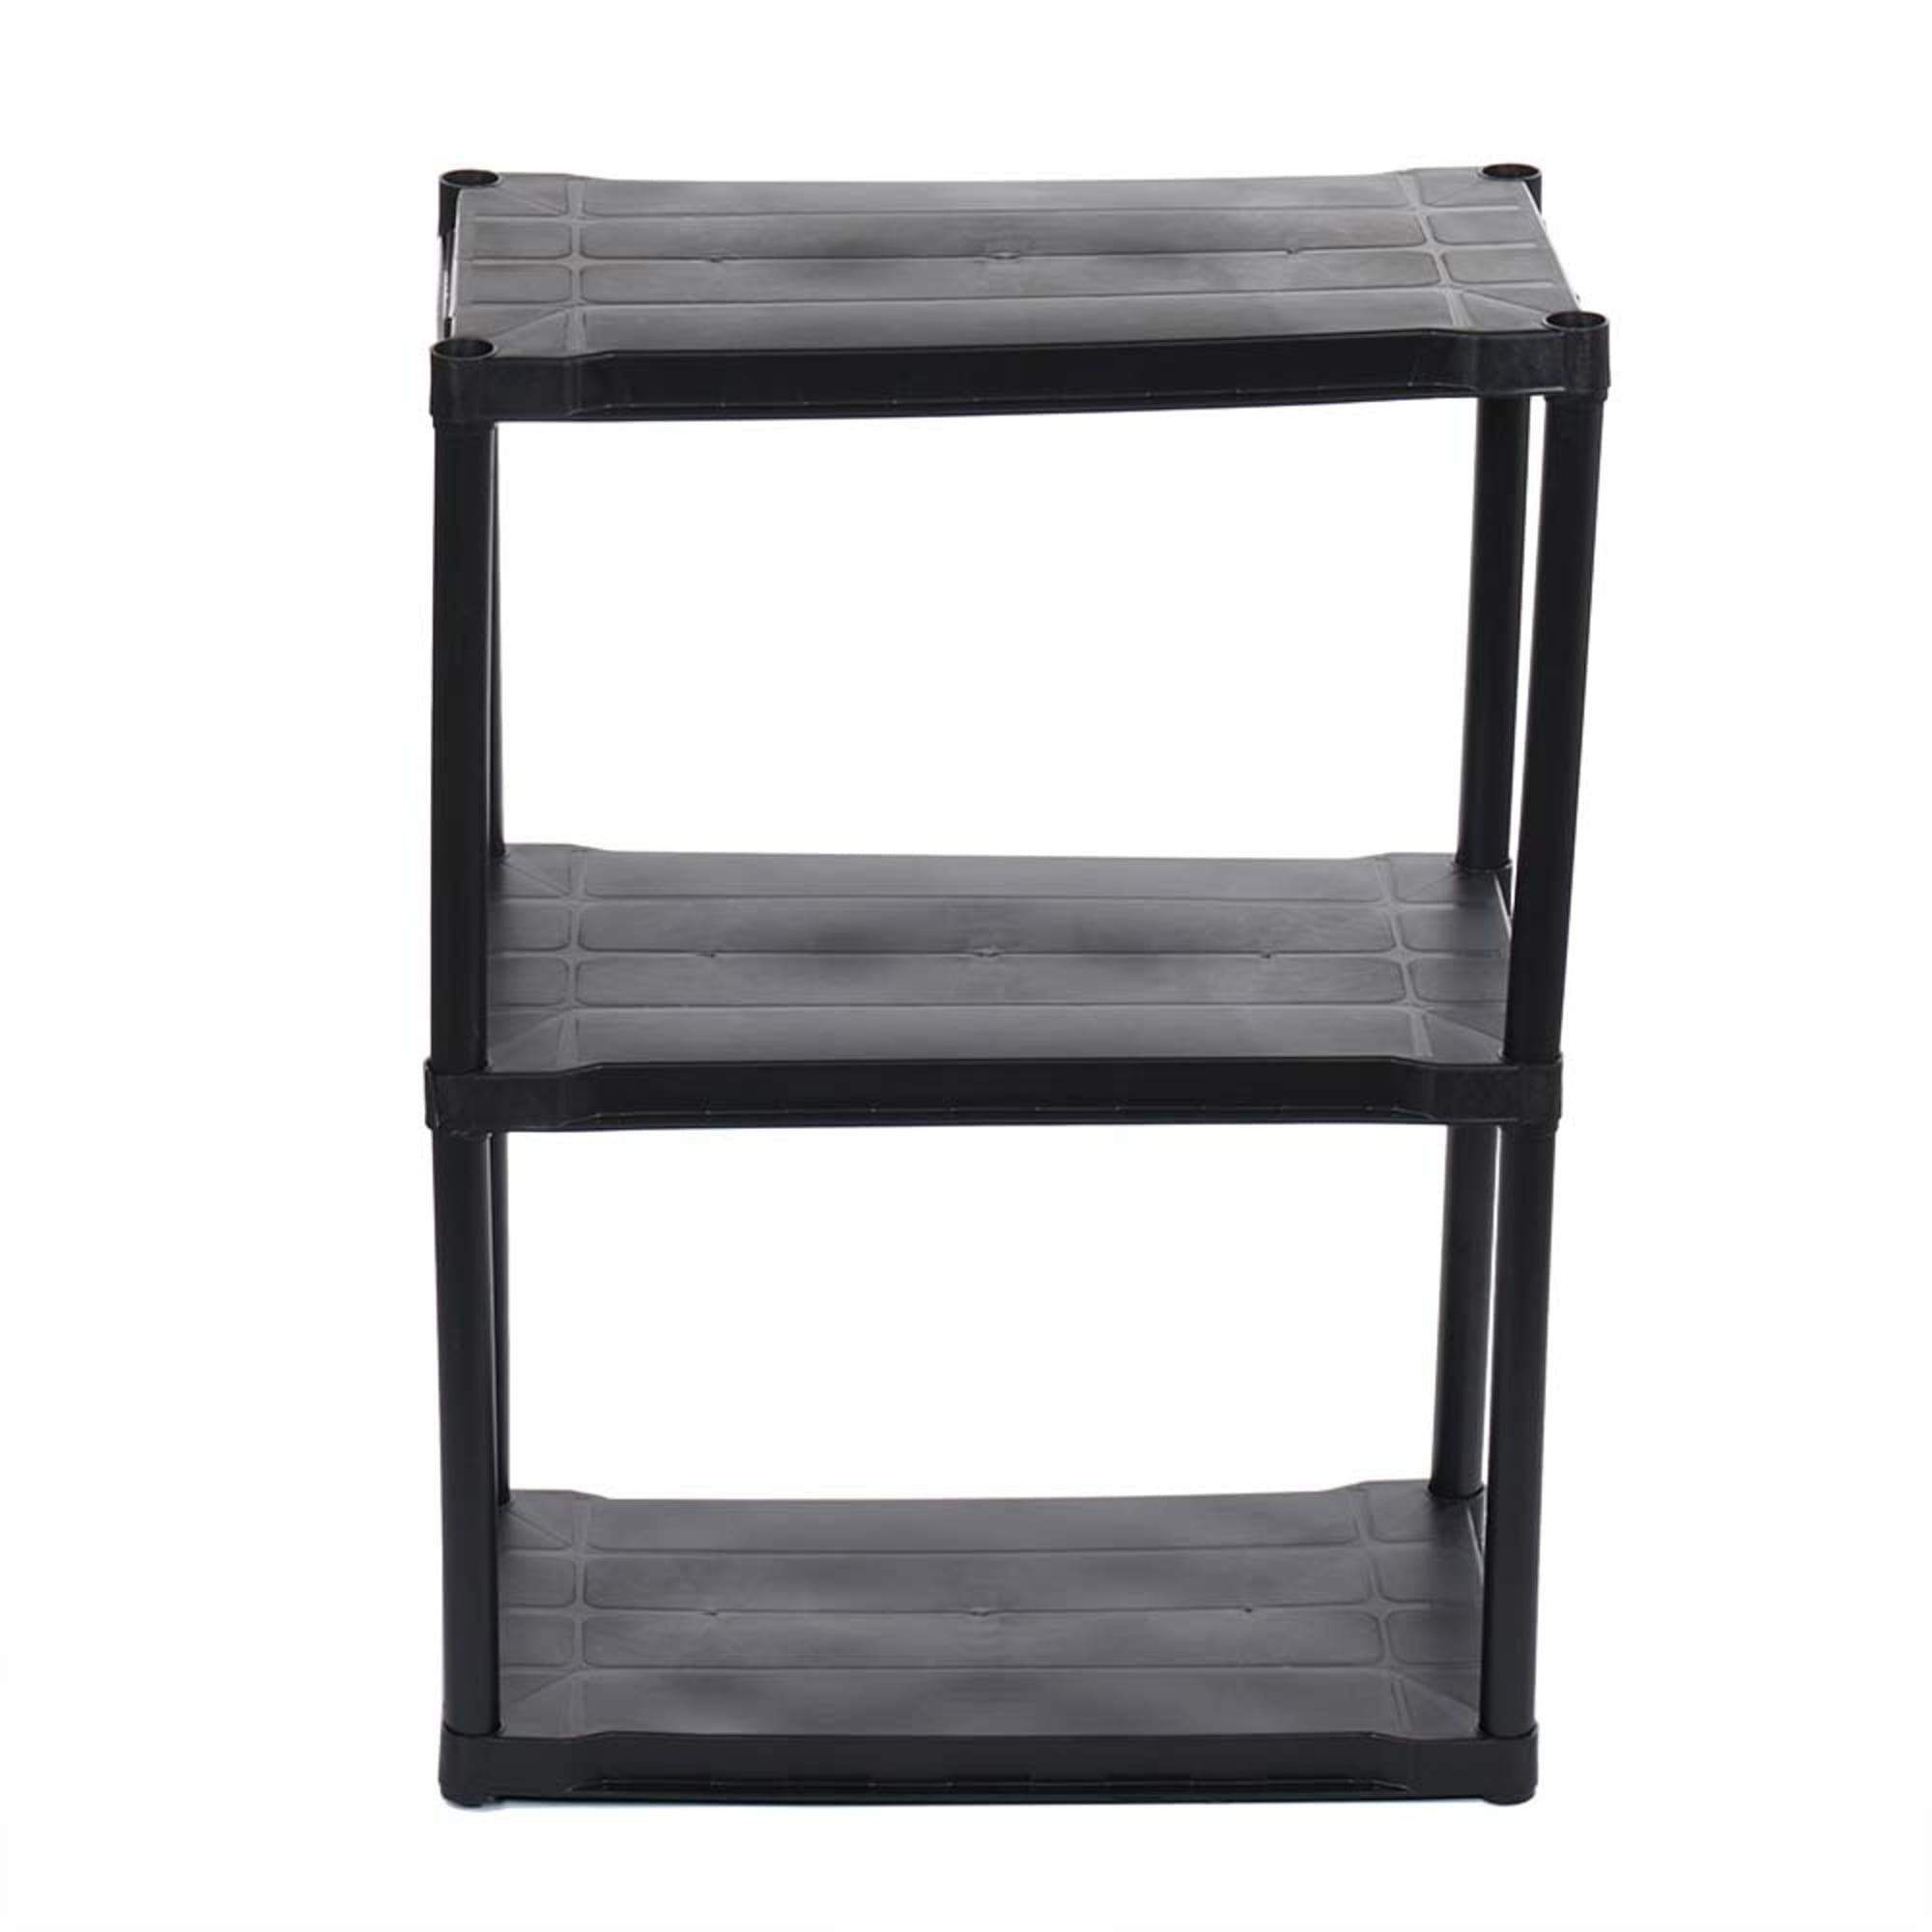 Home Basics 3 Tier Plastic Shelf, (37-inch), Black $25.00 EACH, CASE PACK OF 1